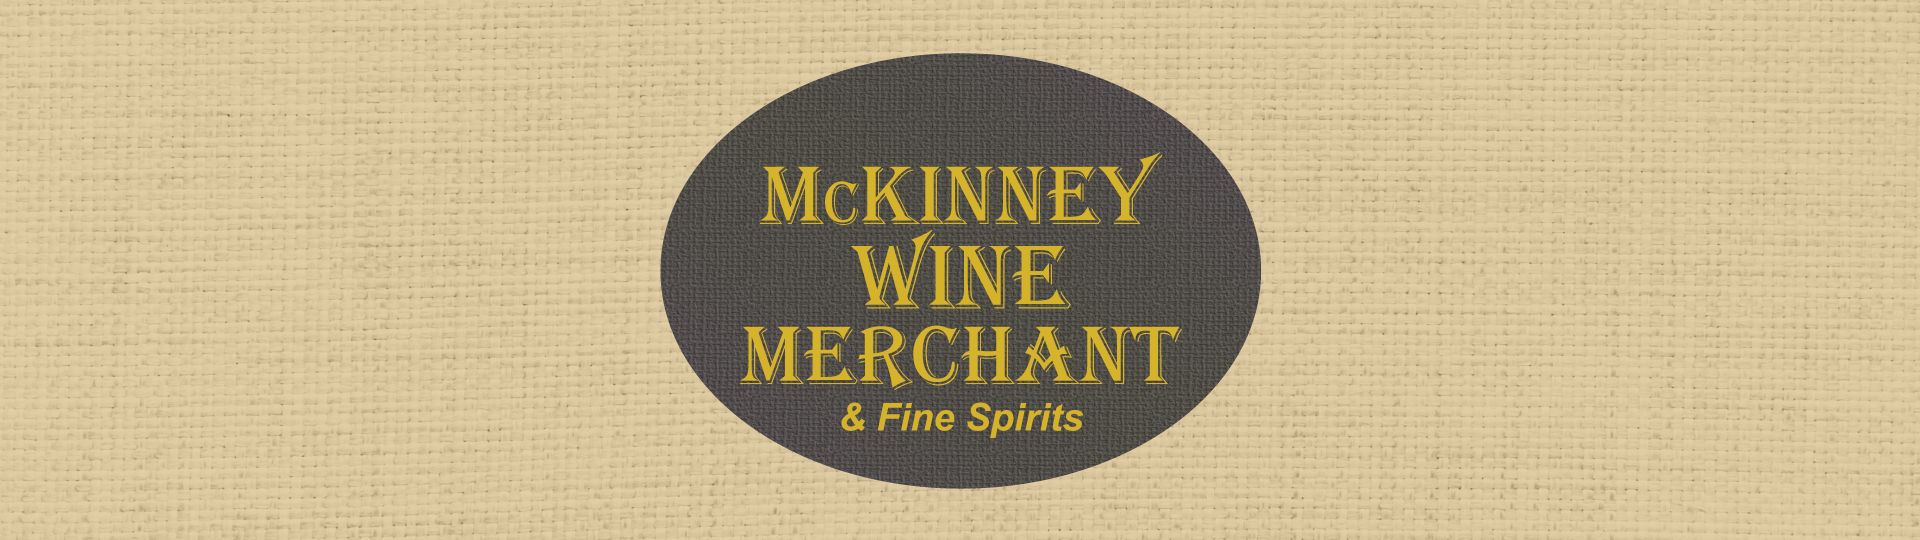 Mckinney Wine Merchant & Fine Spirits